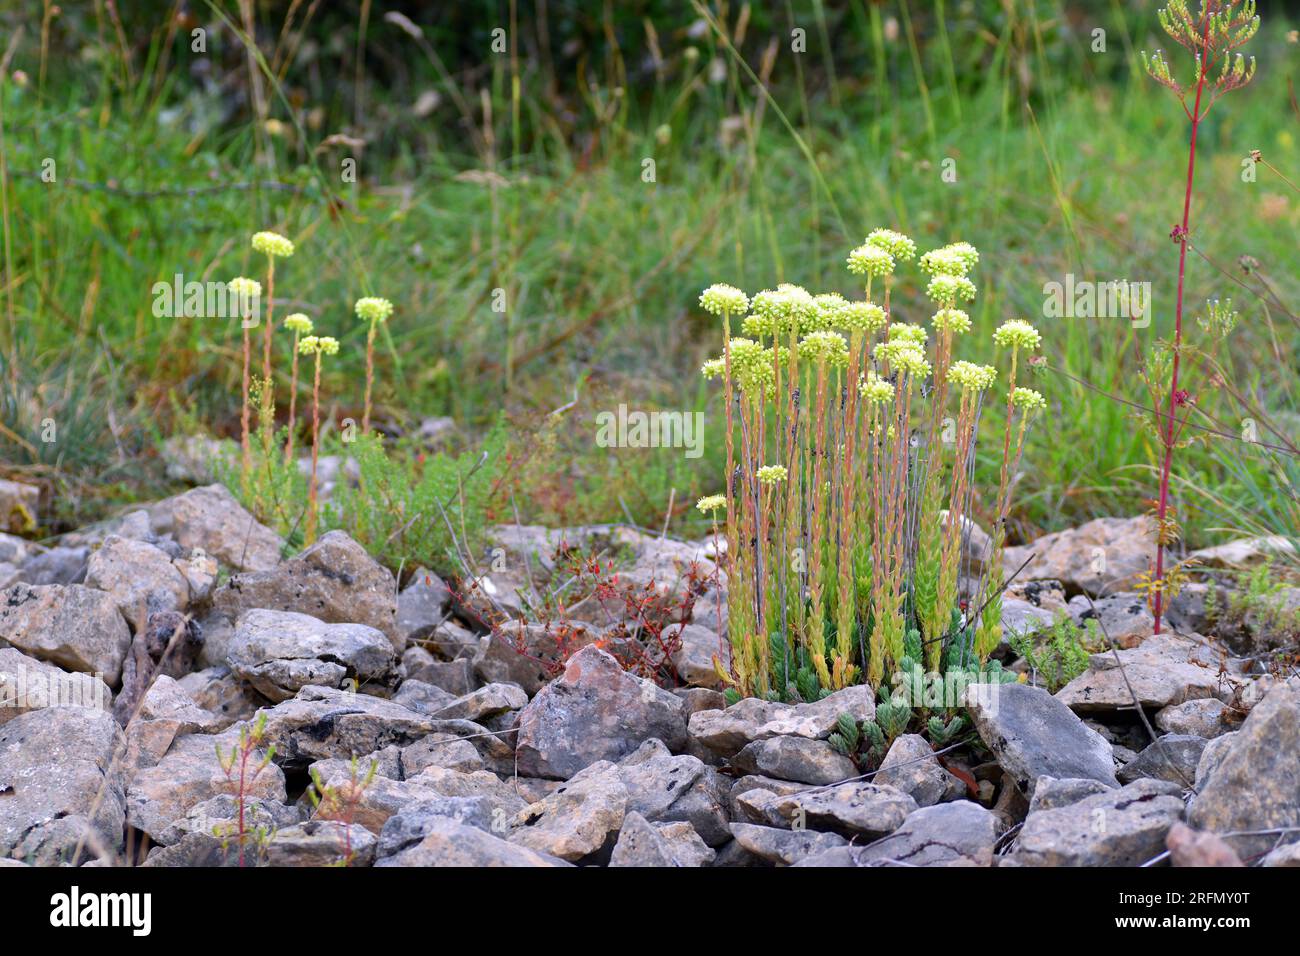 Sedum sediforme en flor que crece entre rocas calcáreas. Foto de stock